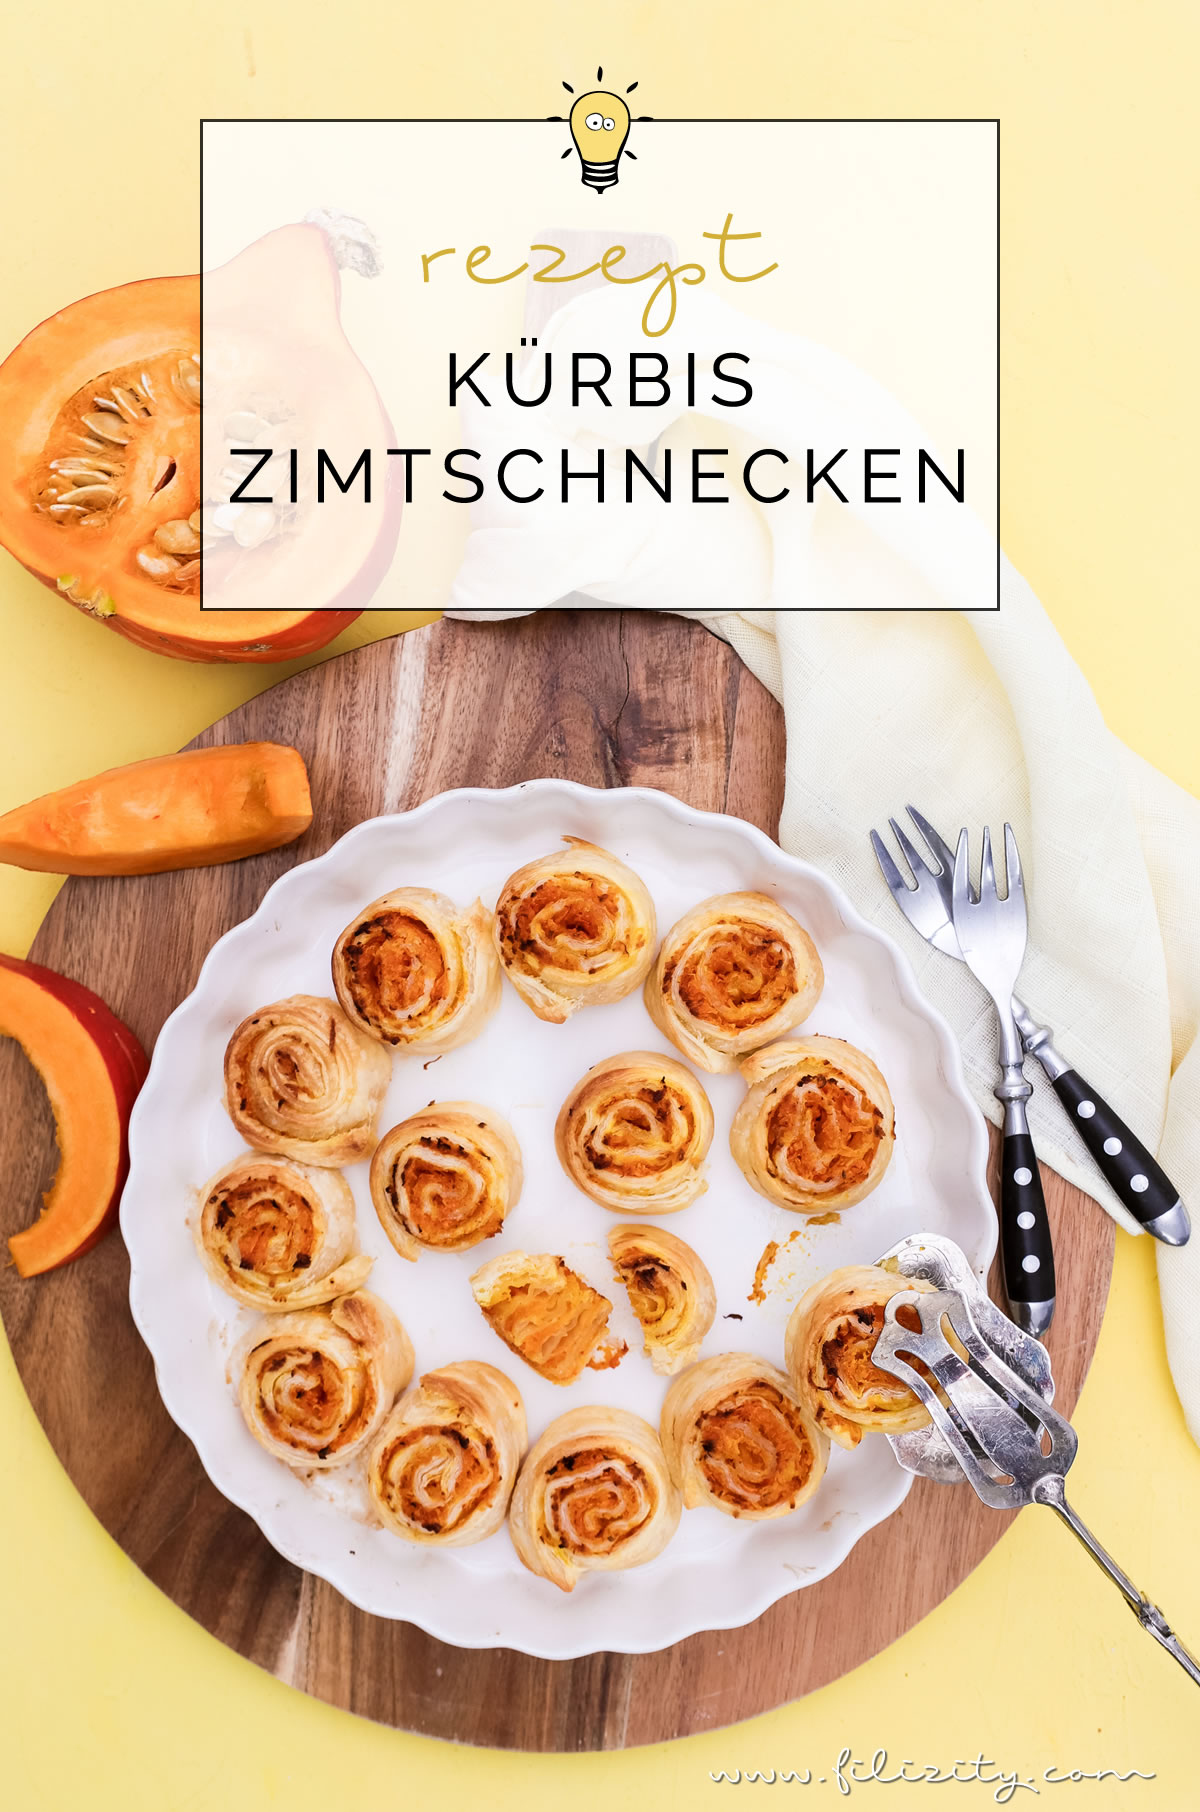 Rezept für Schnelle Kürbis-Zimtschnecken aus Blätterteig | Der Herbst auf der Zunge! | Filizity.com | Food-Blog aus dem Rheinland #kürbis #rezept #herbst #zimtschnecken